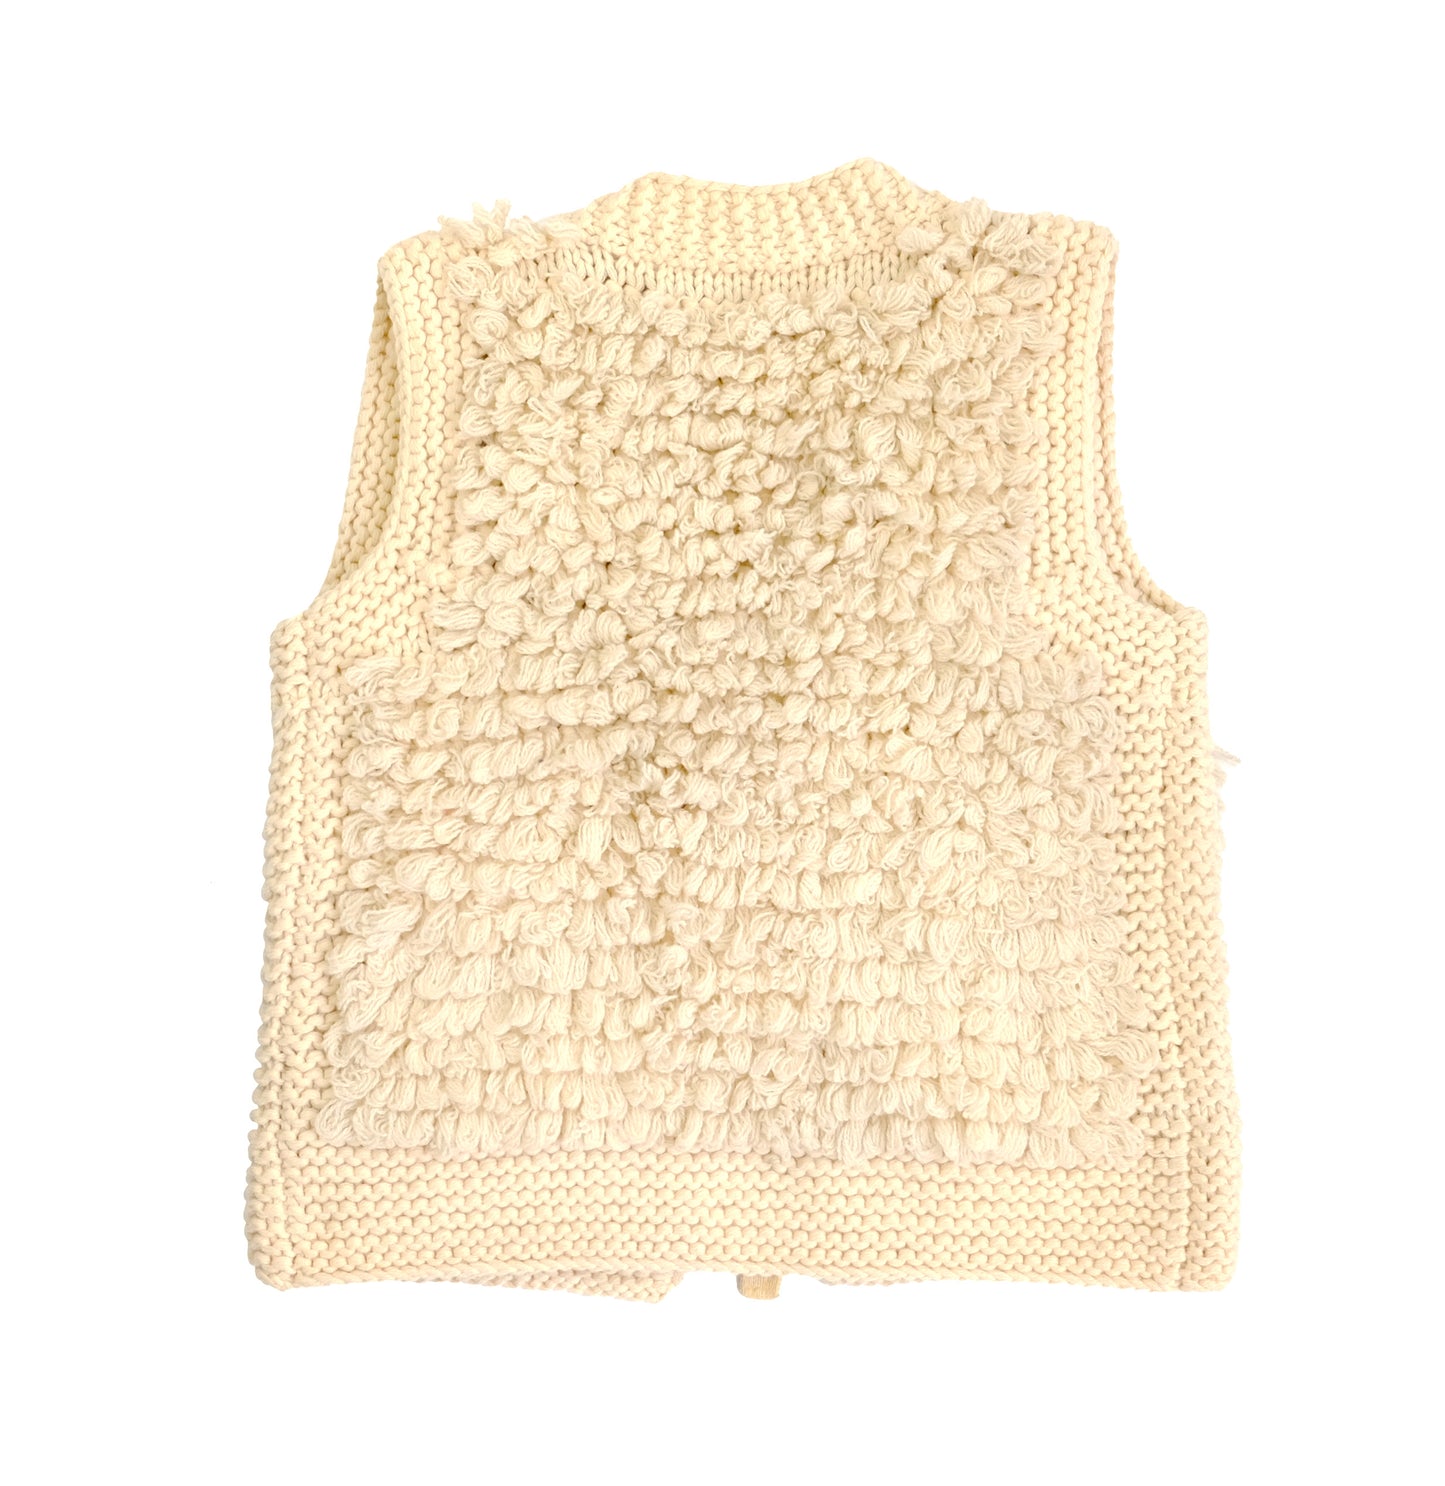 Sonia Rykiel Vintage Gilet in Looped Knitted Wool, Medium